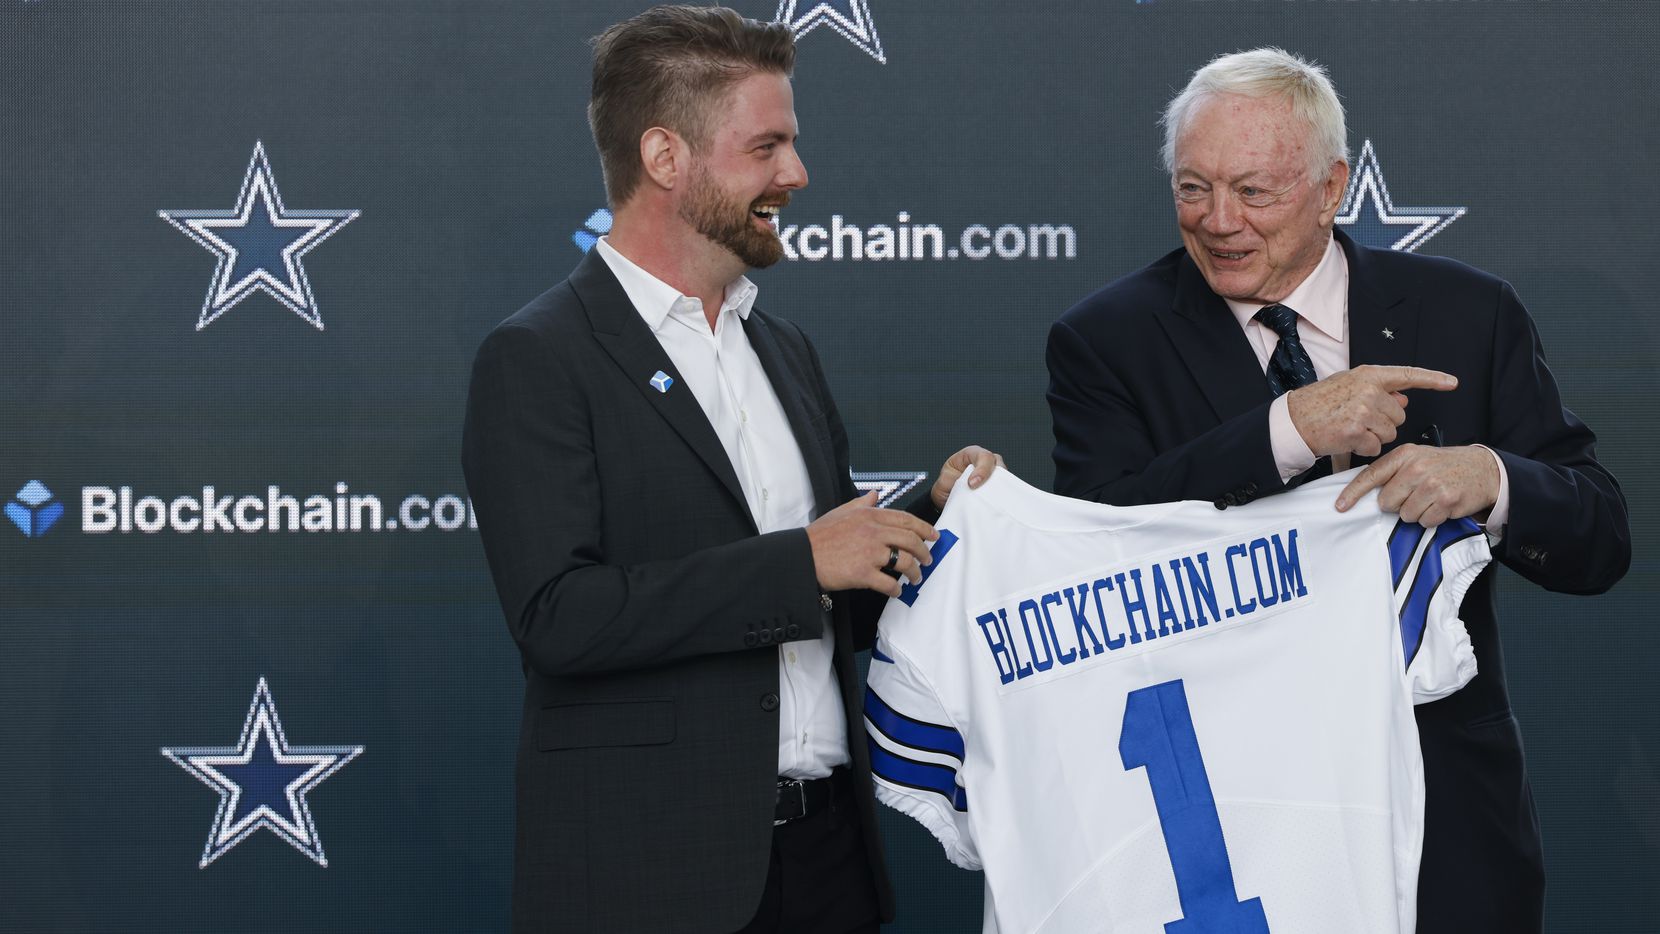 Blockchain.com se convierte en el primer patrocinador de criptomonedas de la NFL con los Dallas Cowboys